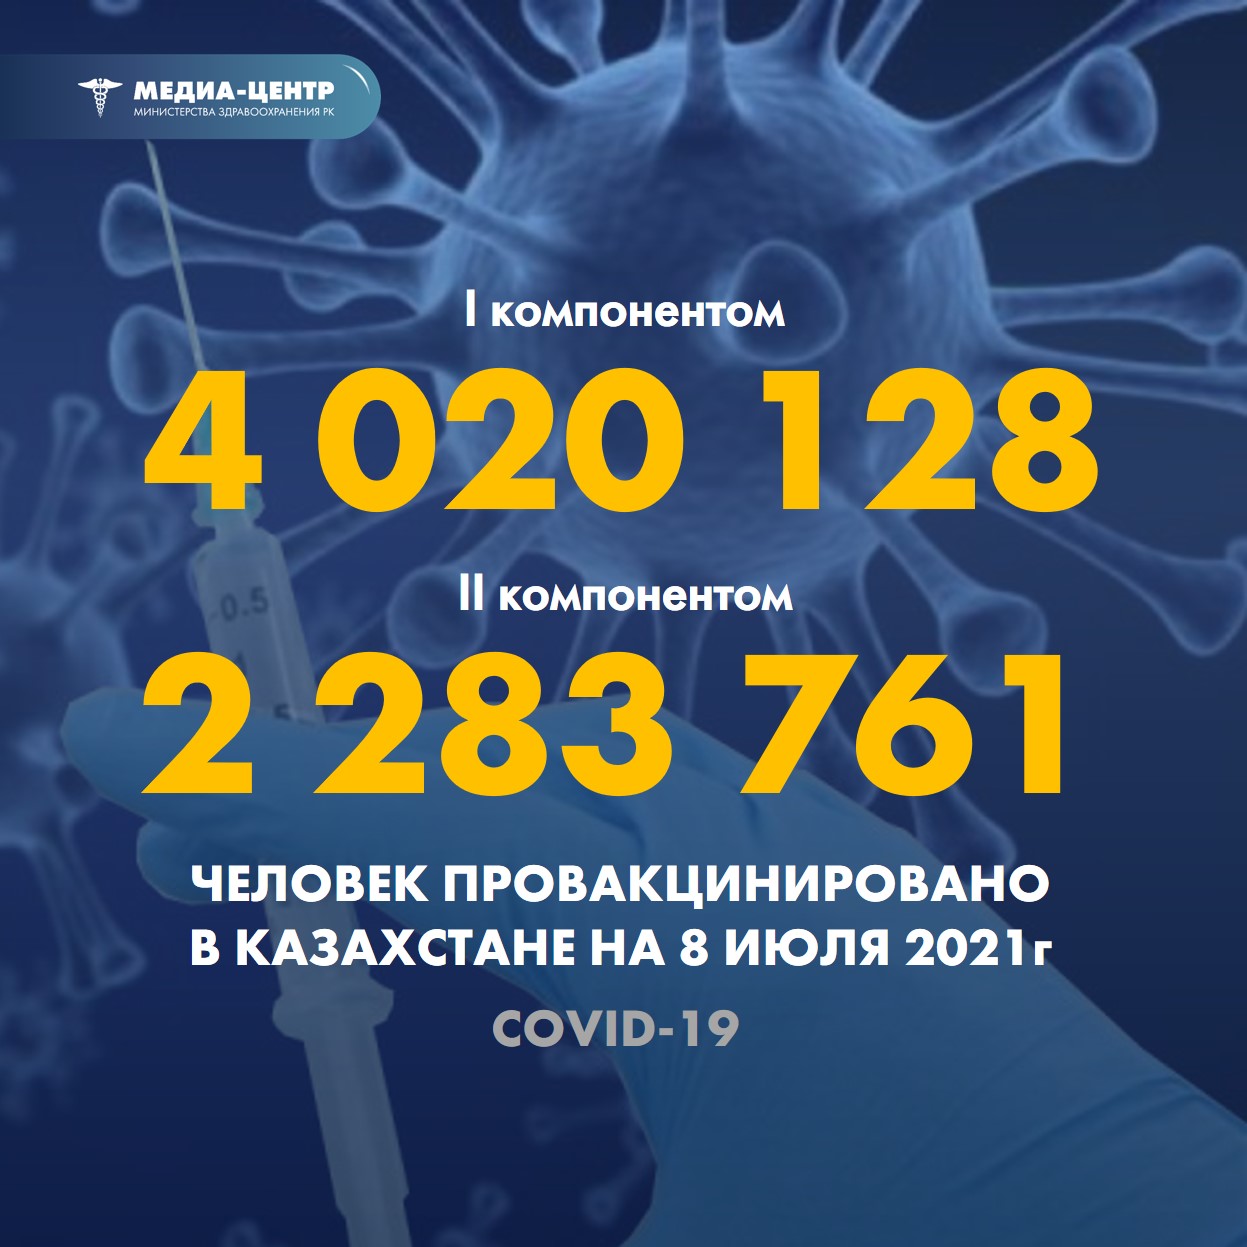 I компонентом 4 020 128 человек провакцинировано в Казахстане на 8 июля 2021 г, II компонентом 2 283 761 человек.